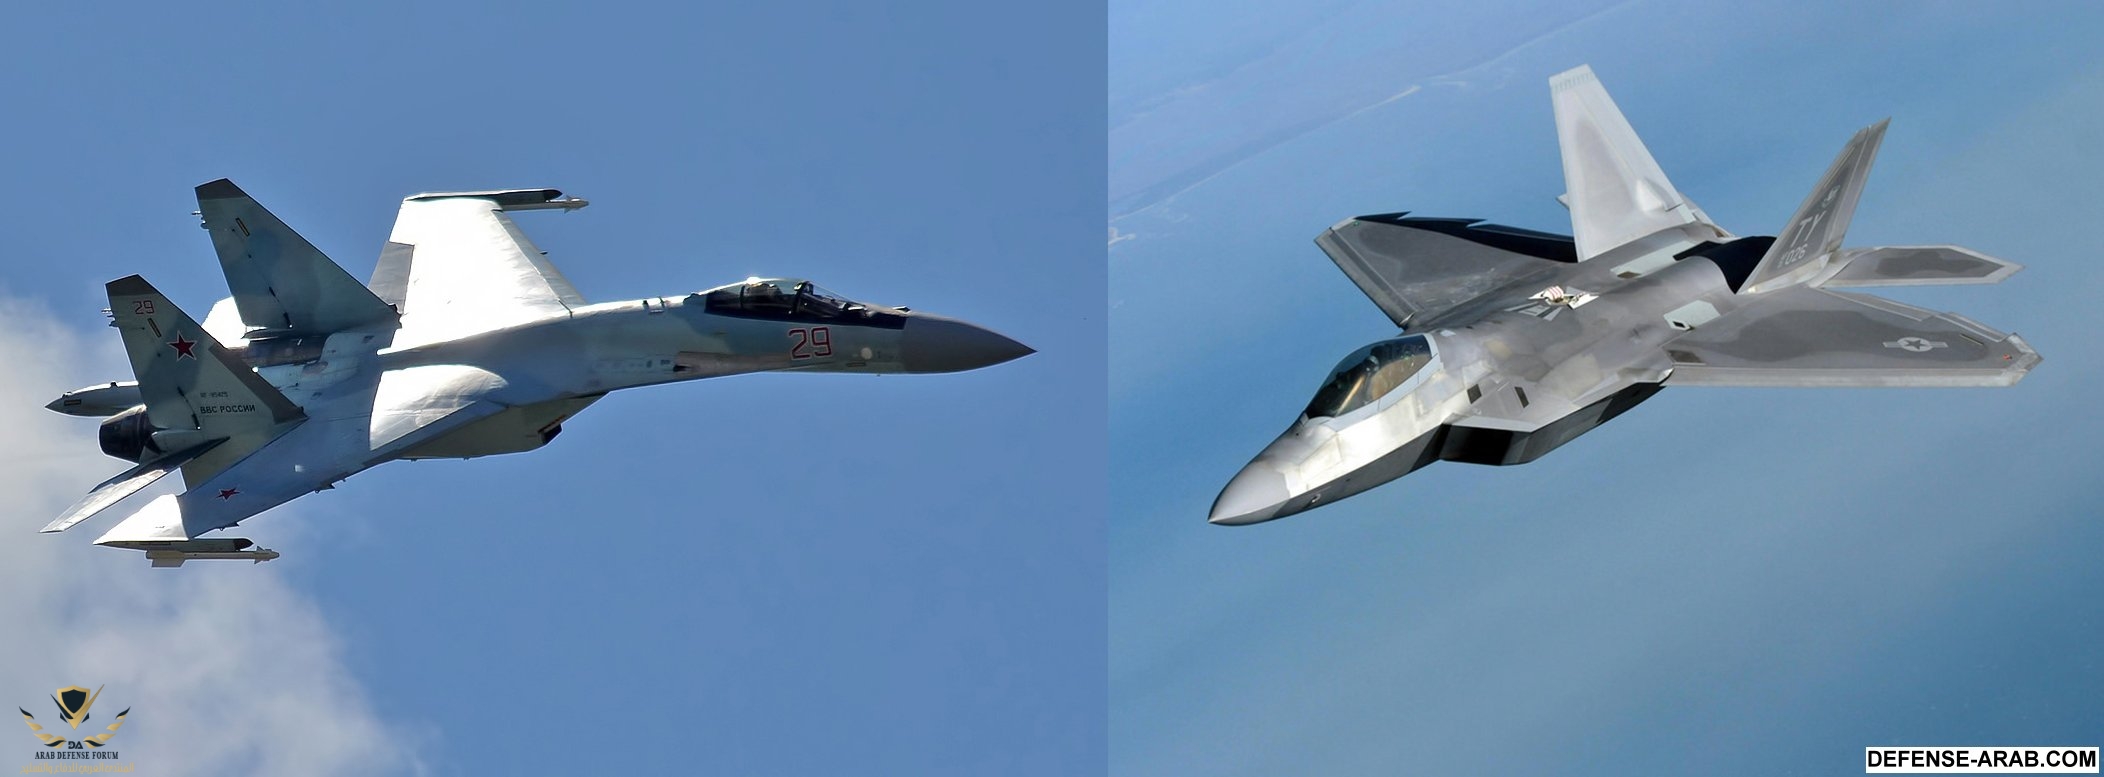 Su-35-vs-F-22.jpg